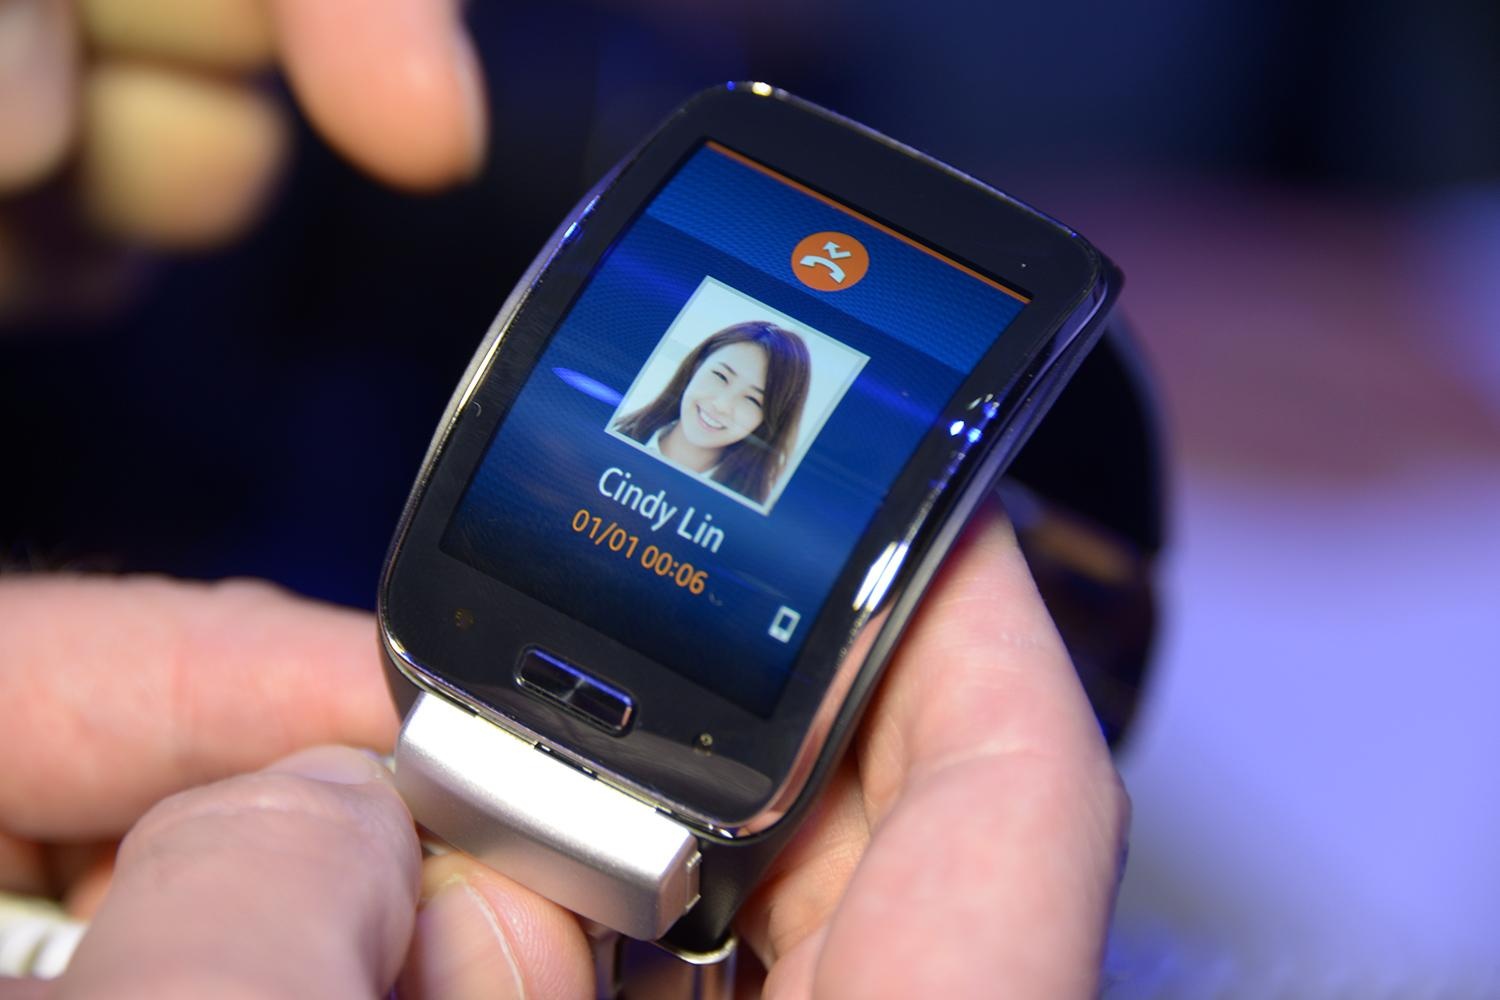 Samsung Gear S là mẫu đồng hồ thông minh giá rẻ với màn hình cong, khả năng hoạt động độc lập không cần smartphone